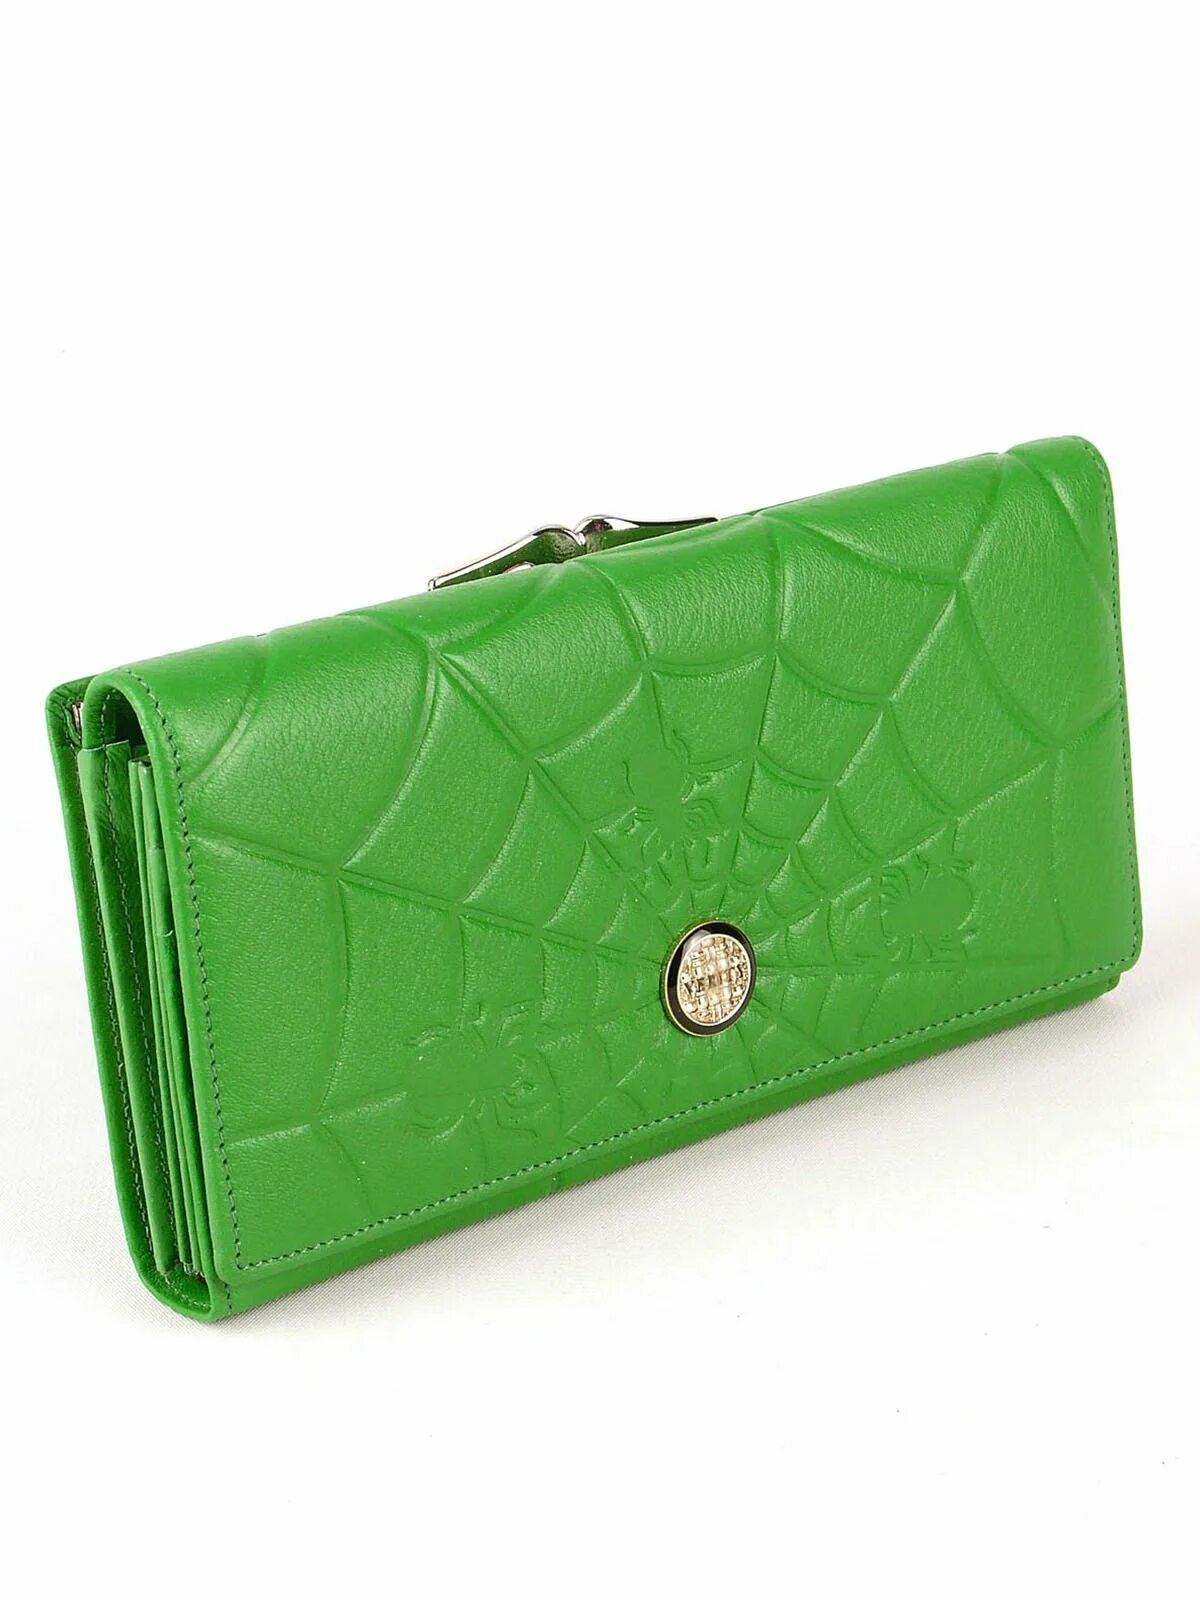 K2815 Green кошелек. Versace collection кошелек салатовый. Женский кошелек - зеленый. Кошельки женские зеленого цвета.